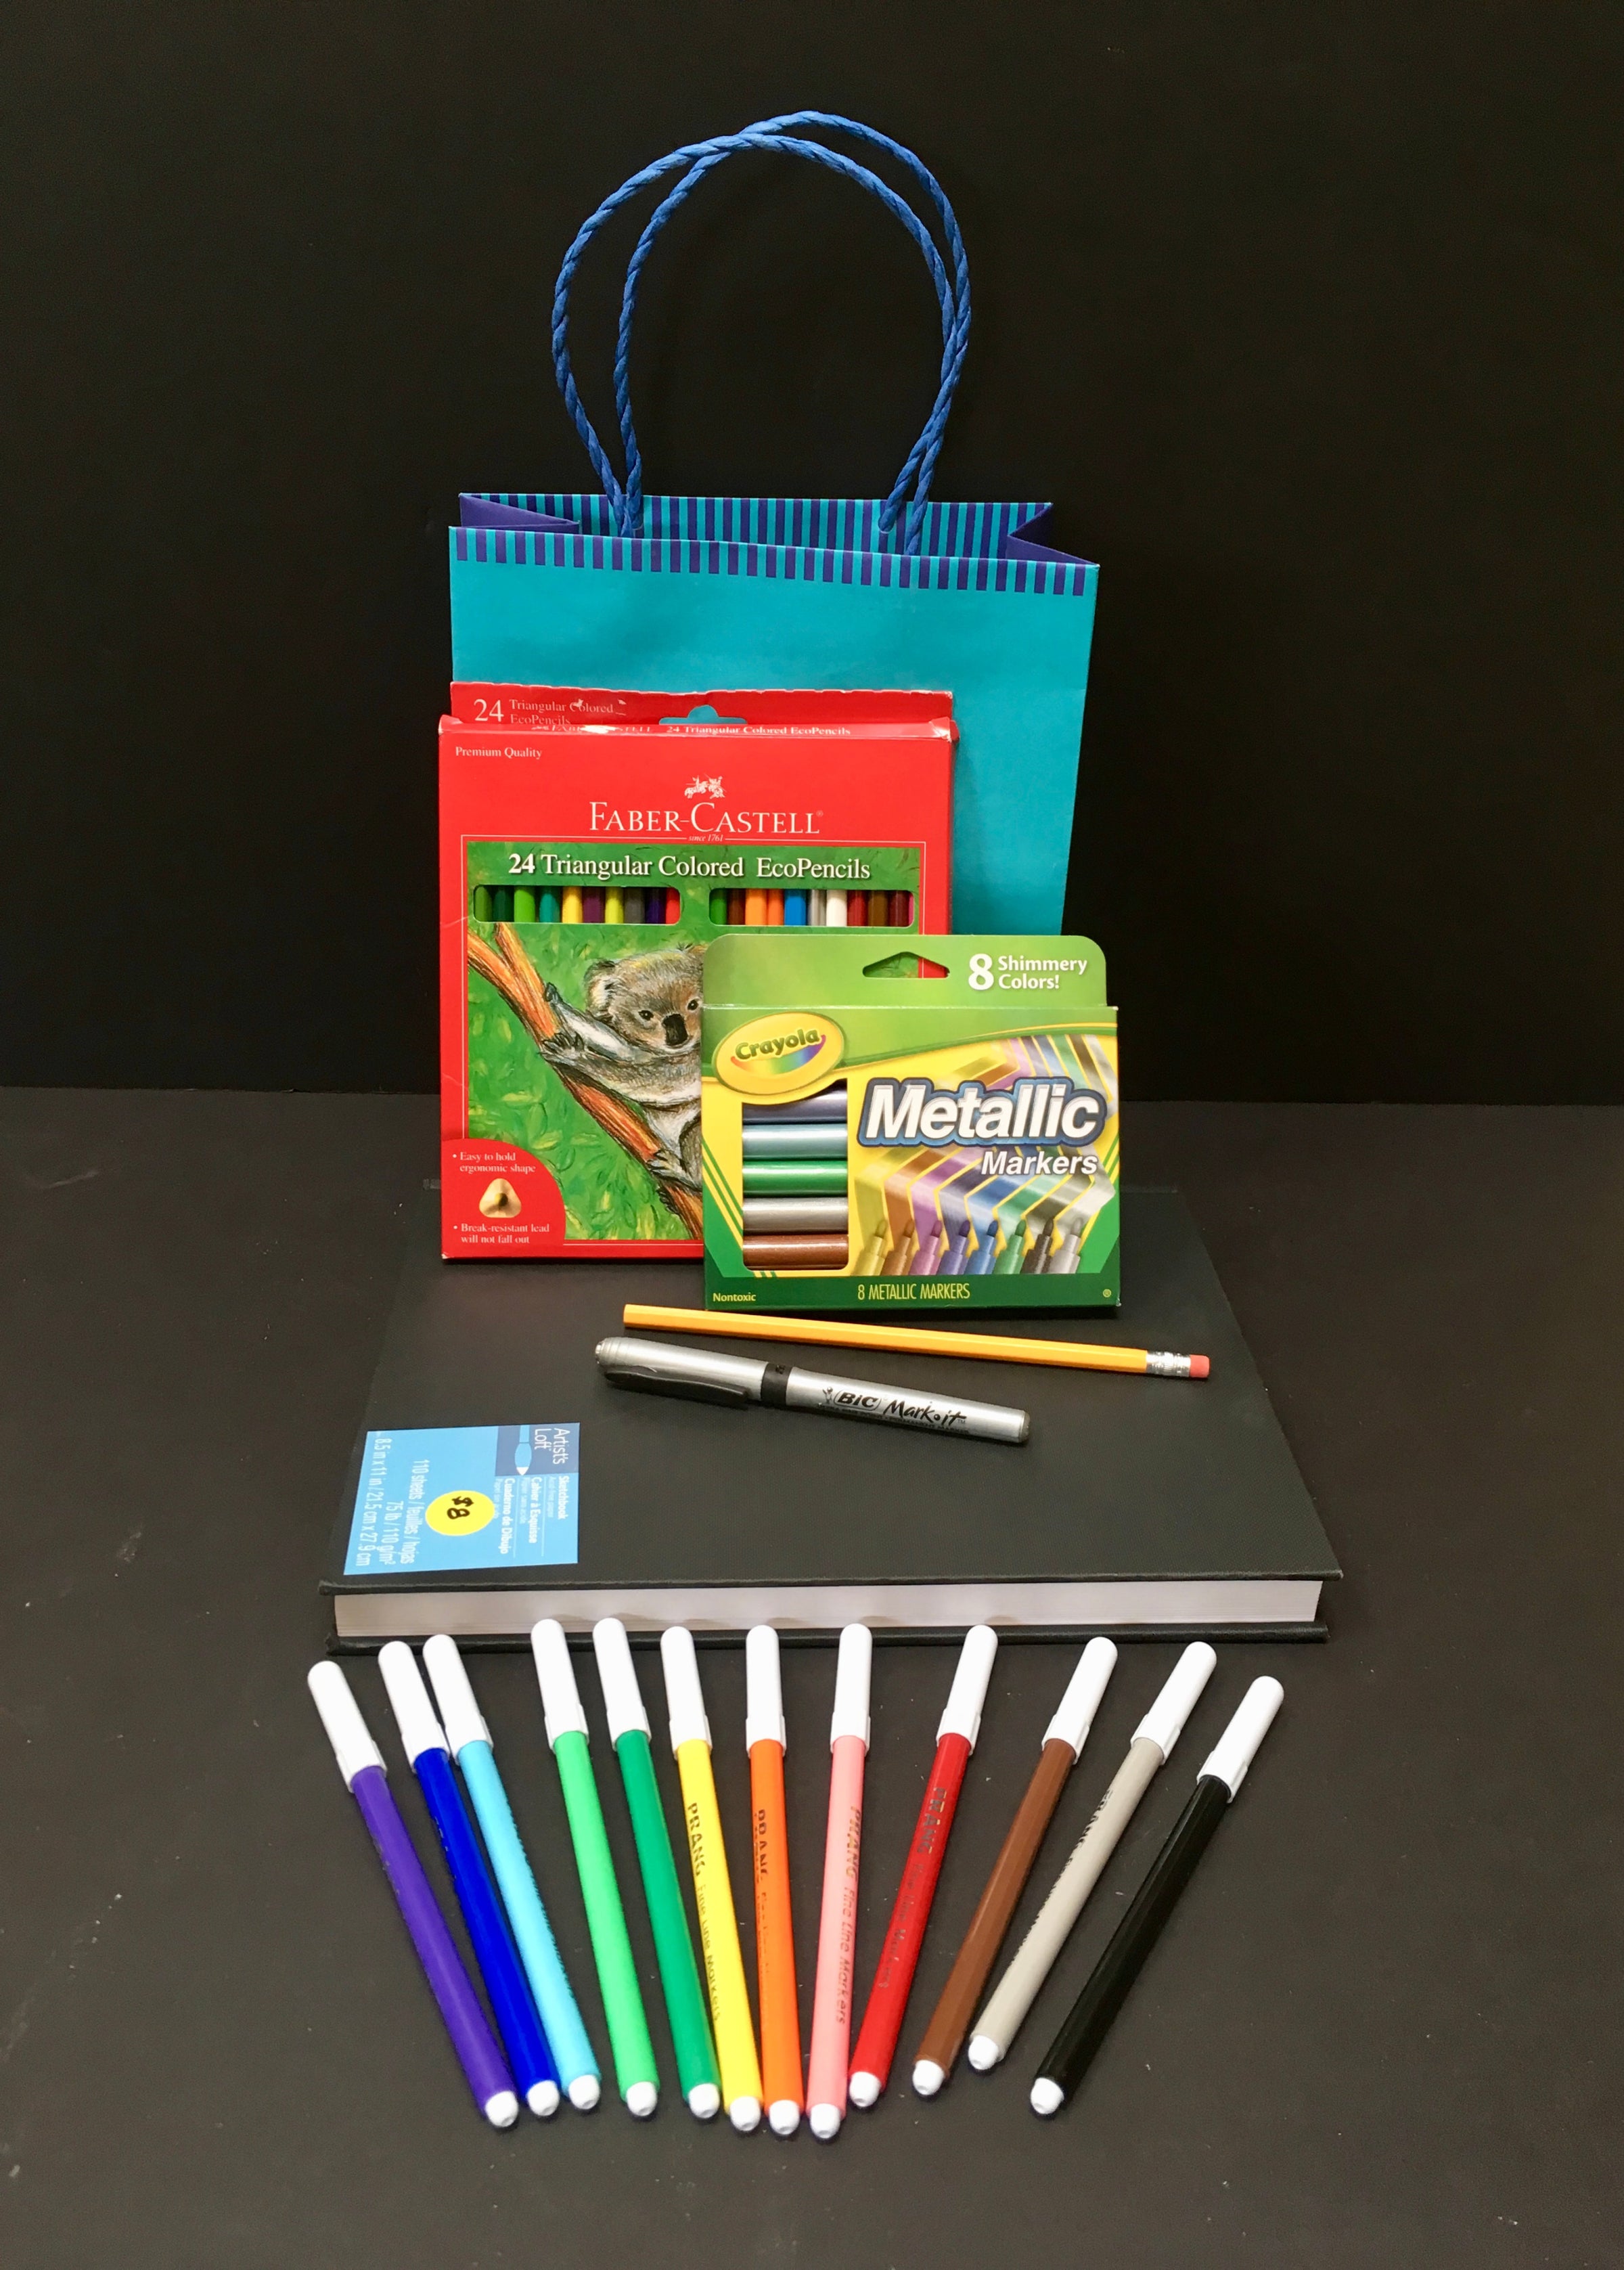 Creatology Art Supplies: Construction Paper Pad $2, 100-Piece Kids' Art Set